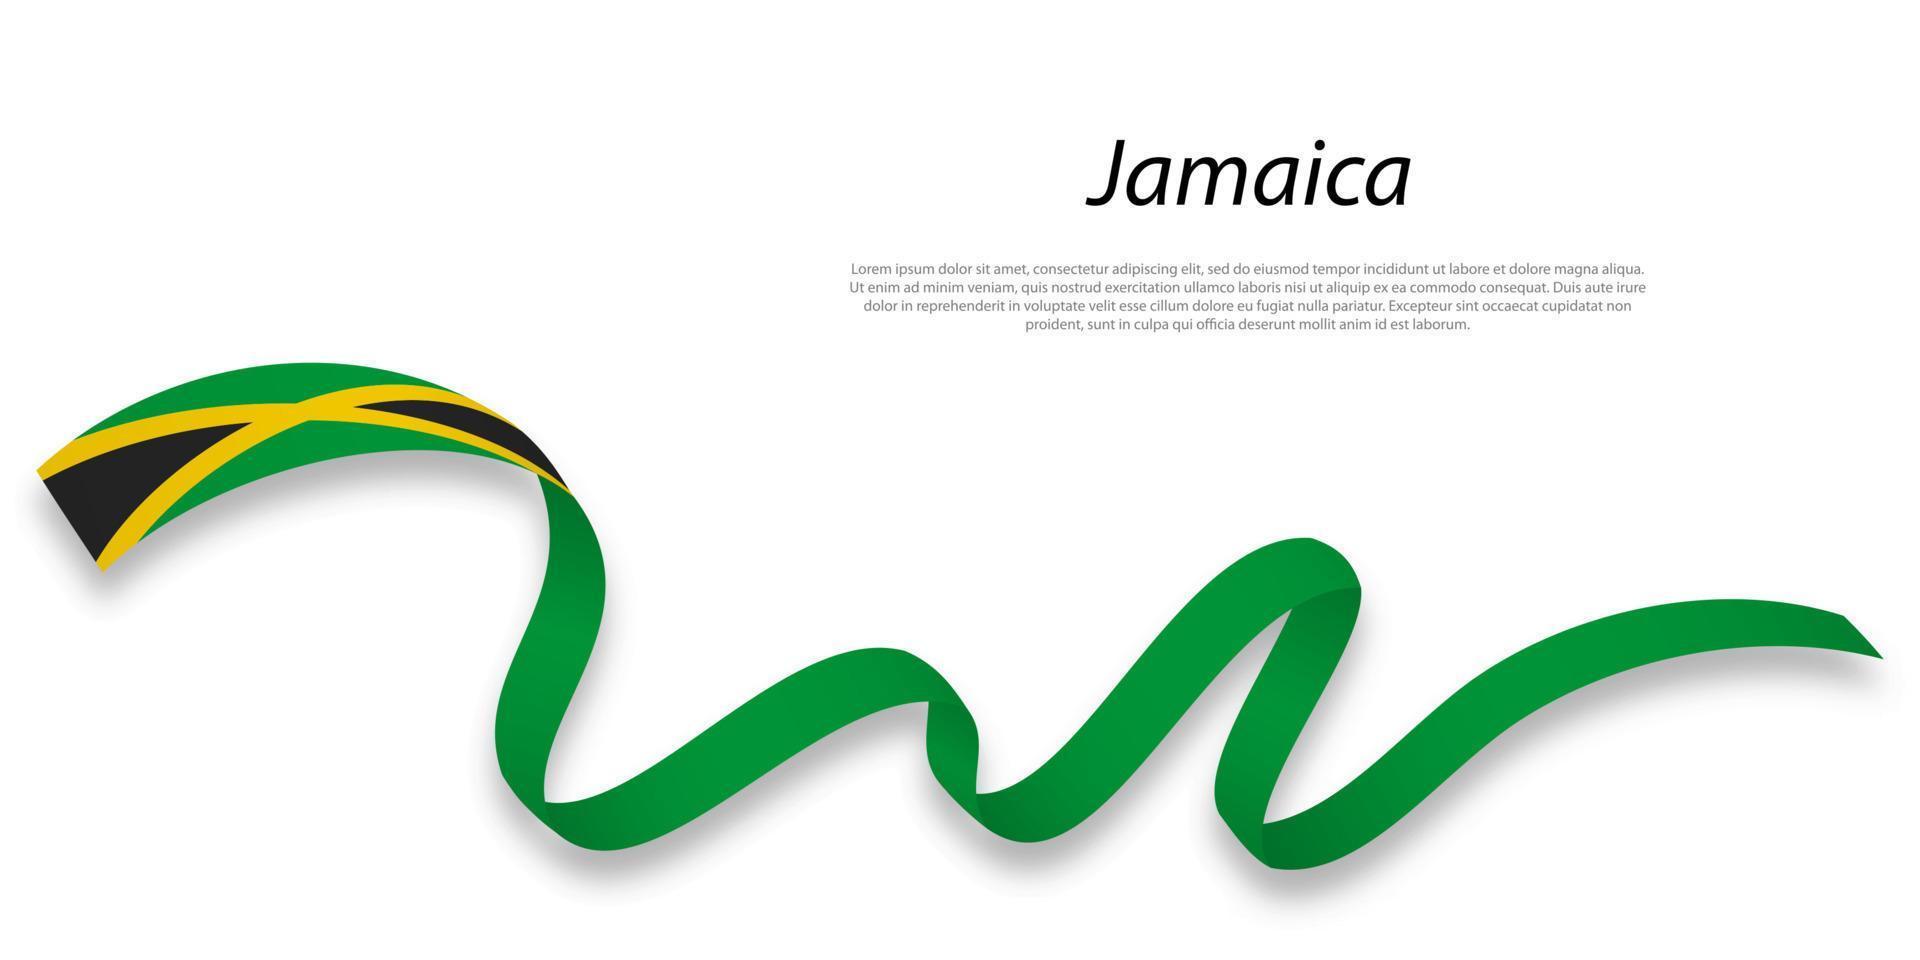 acenando fita ou bandeira com bandeira do Jamaica. vetor